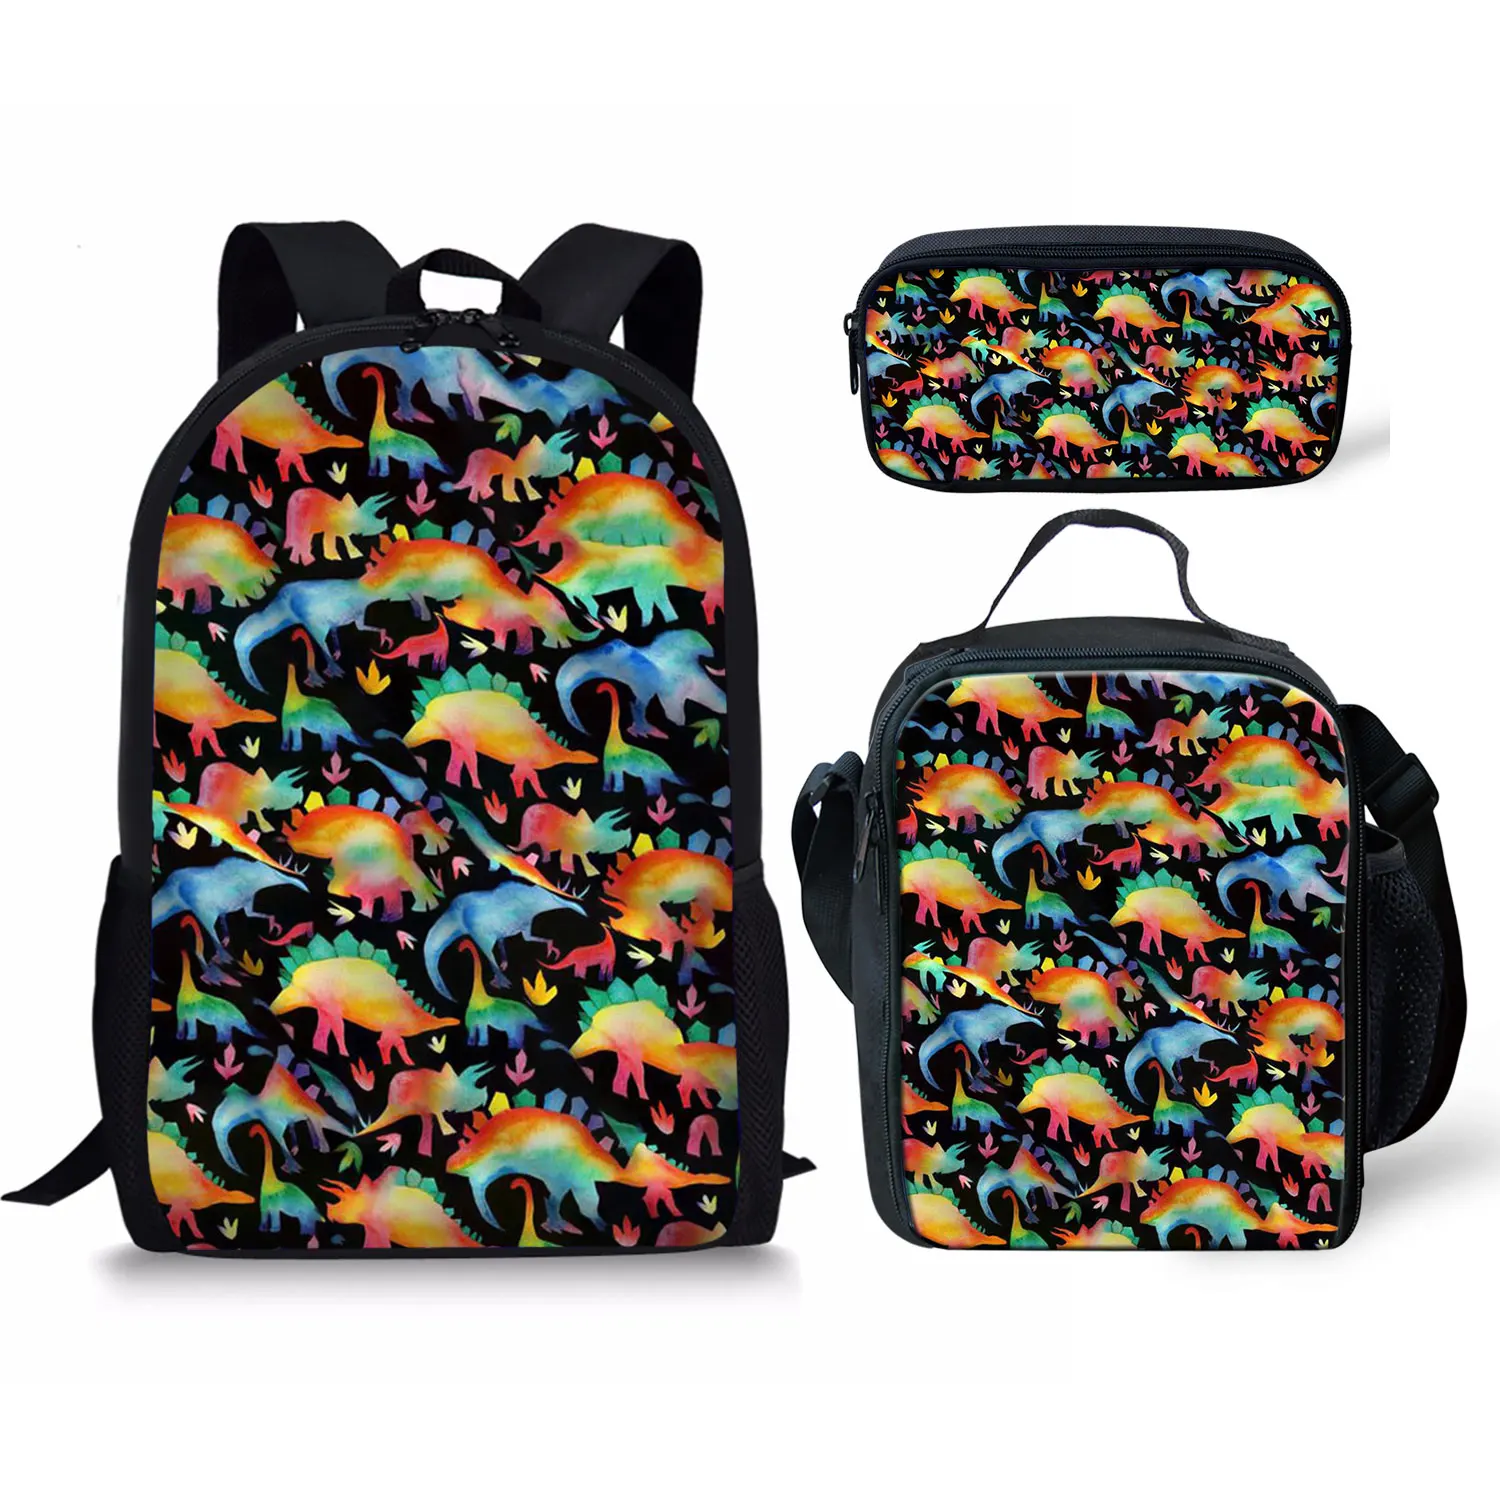 Рюкзак и сумка для ланча с мультипликационным принтом динозавра, портативный дорожный детский Ранец, прочные вместительные школьные сумки